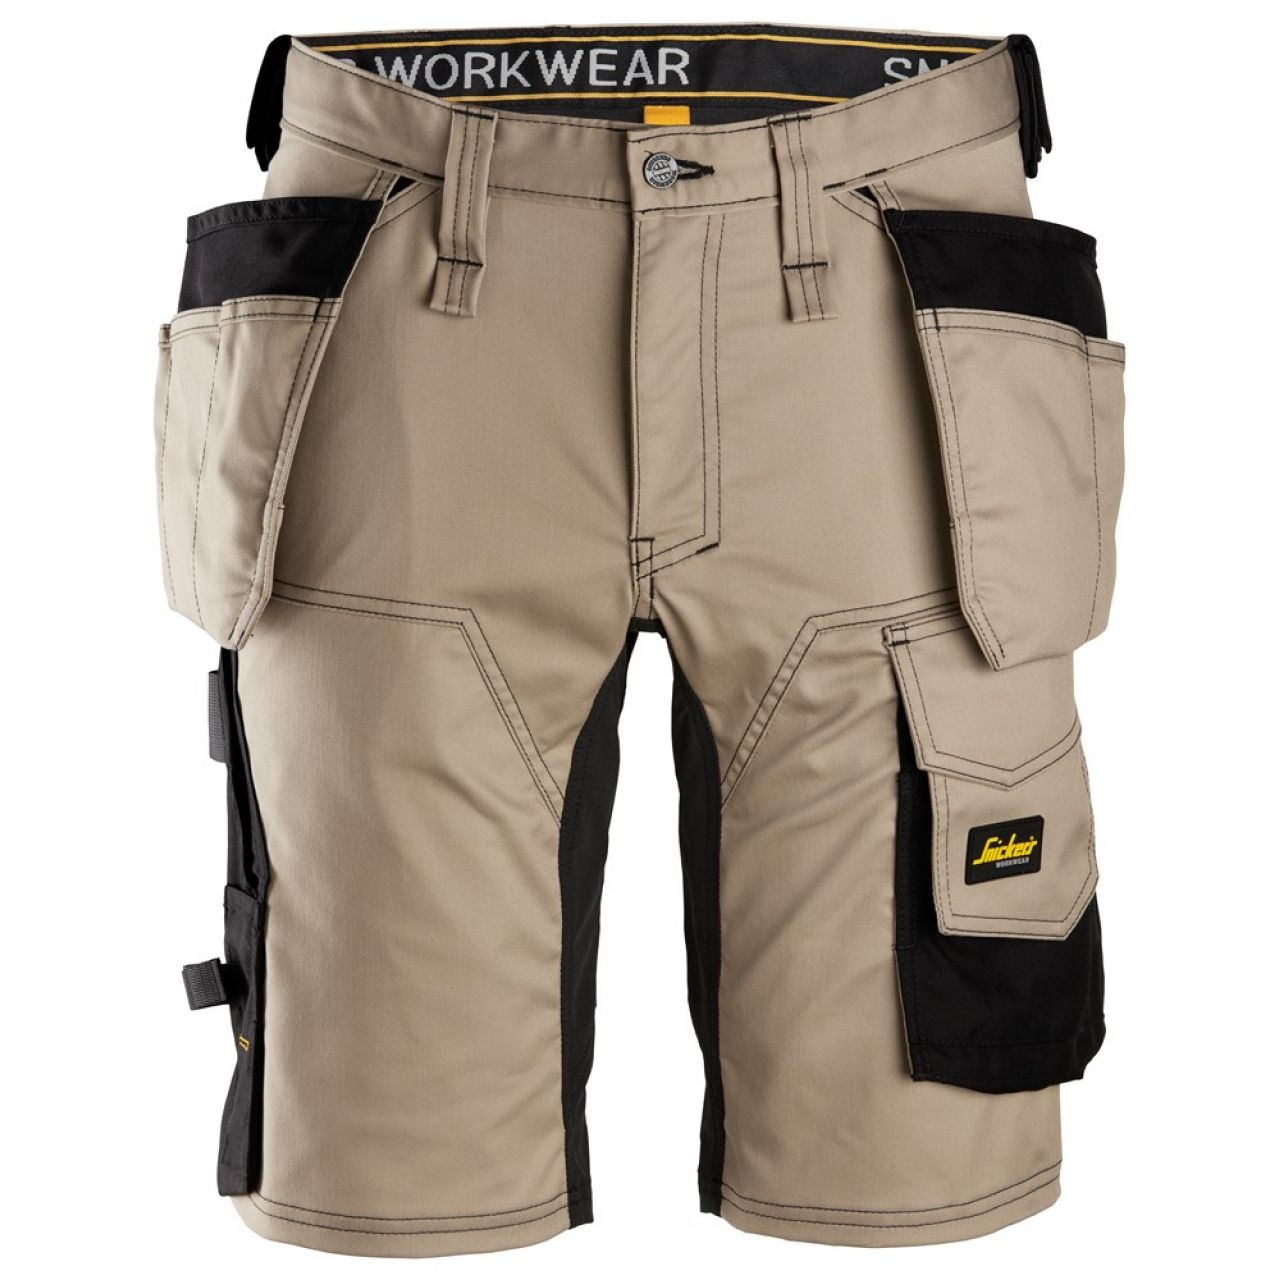 6141 Pantalones cortos de trabajo elásticos con bolsillos flotantes AllroundWork beige-negro talla 44